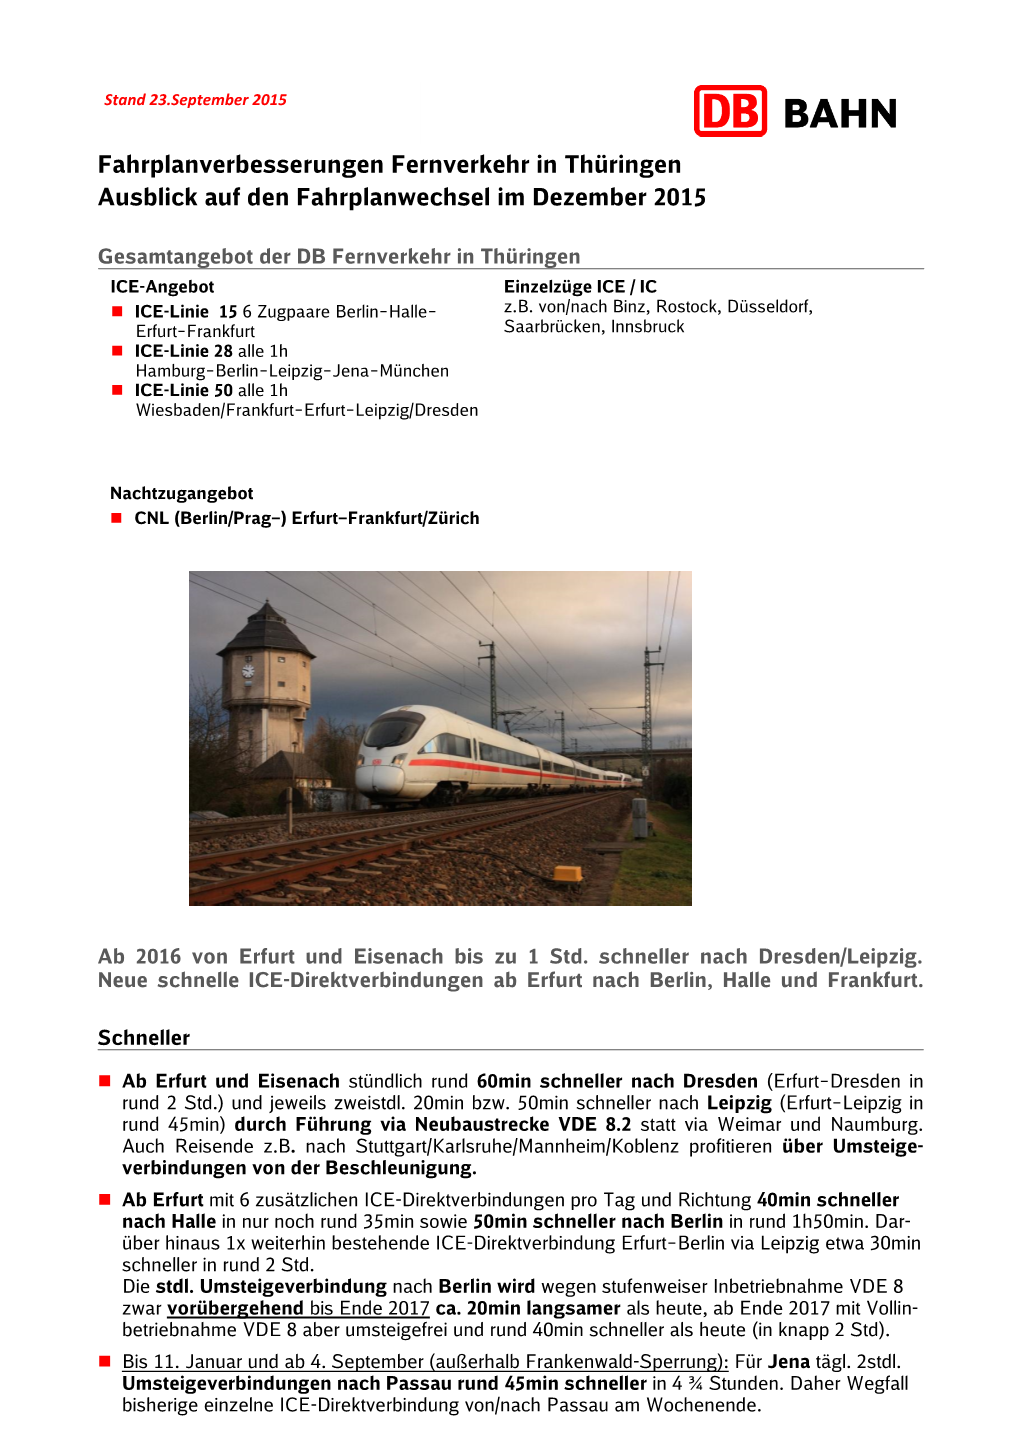 Fahrplanverbesserungen Fernverkehr in Thüringen Ausblick Auf Den Fahrplanwechsel Im Dezember 2015